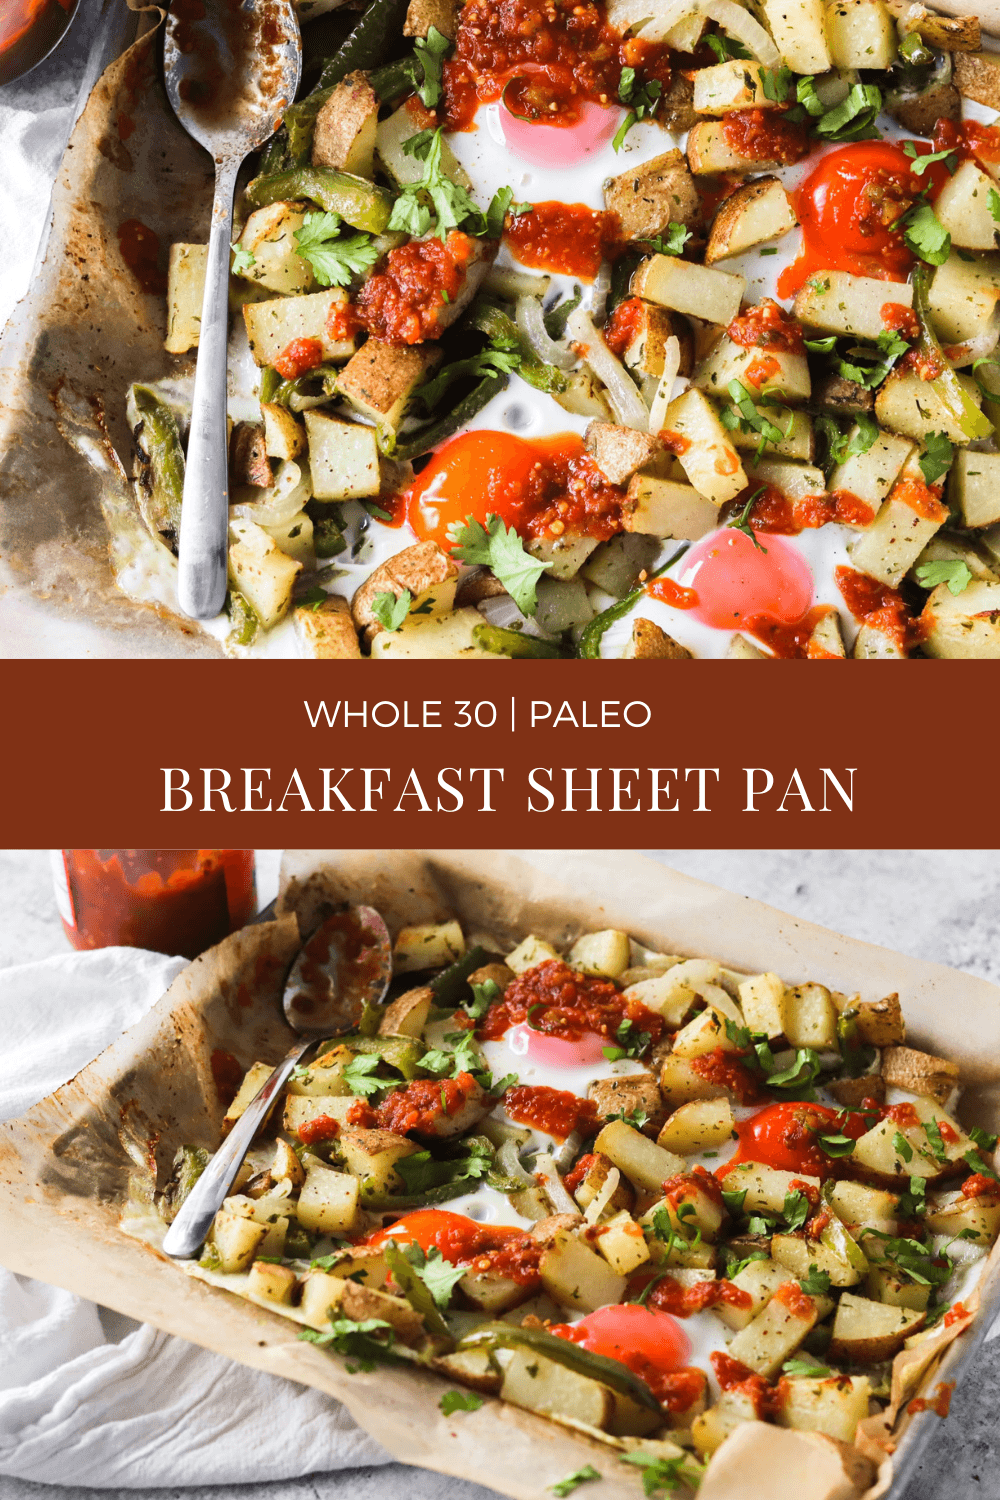 Whole 30 Breakfast Sheet Pan Recipe